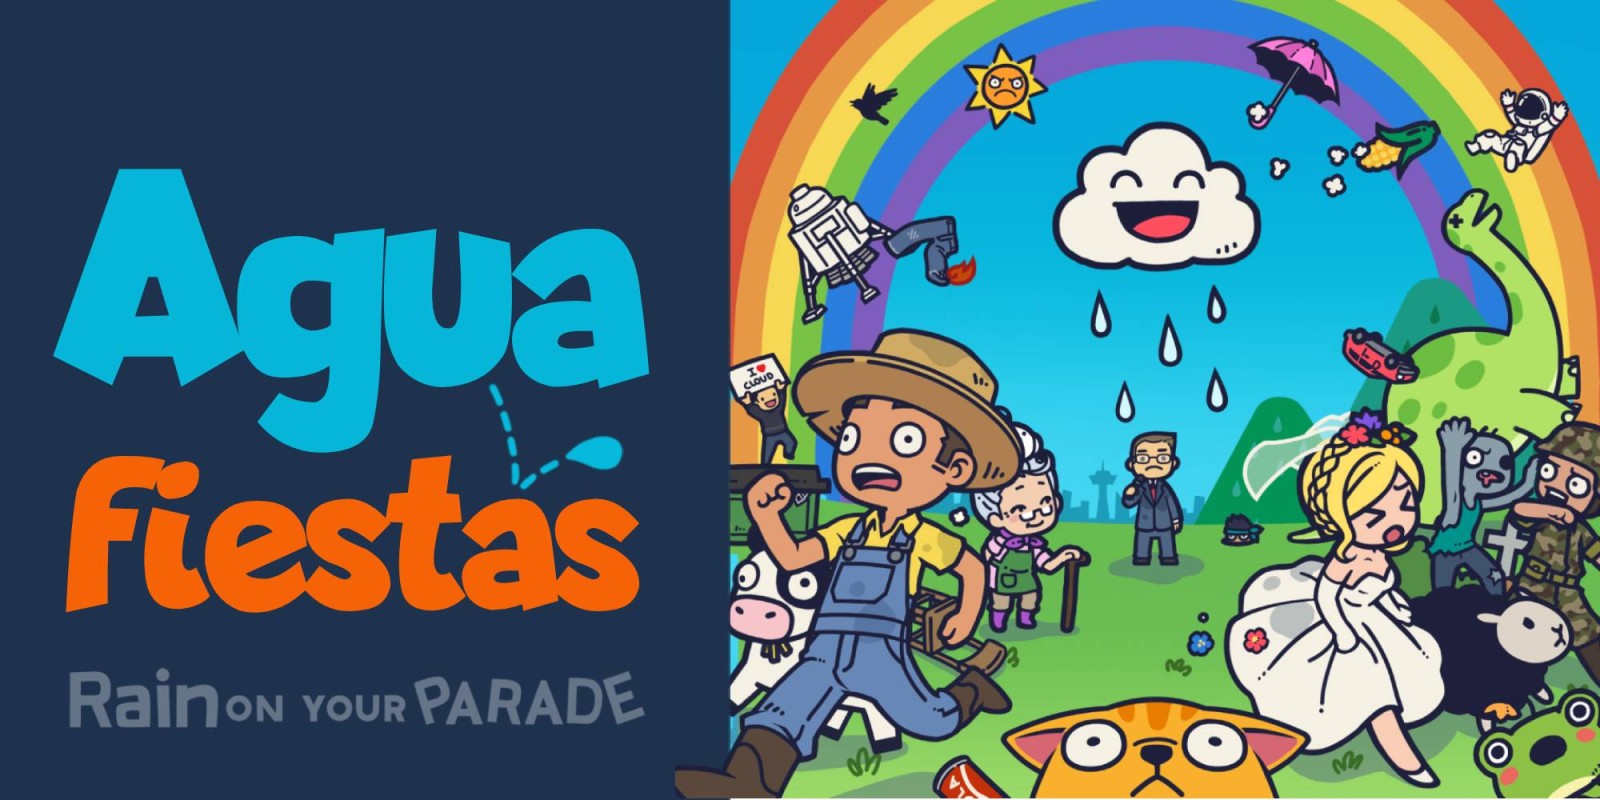 Aguafiestas | Rain on Your Parade